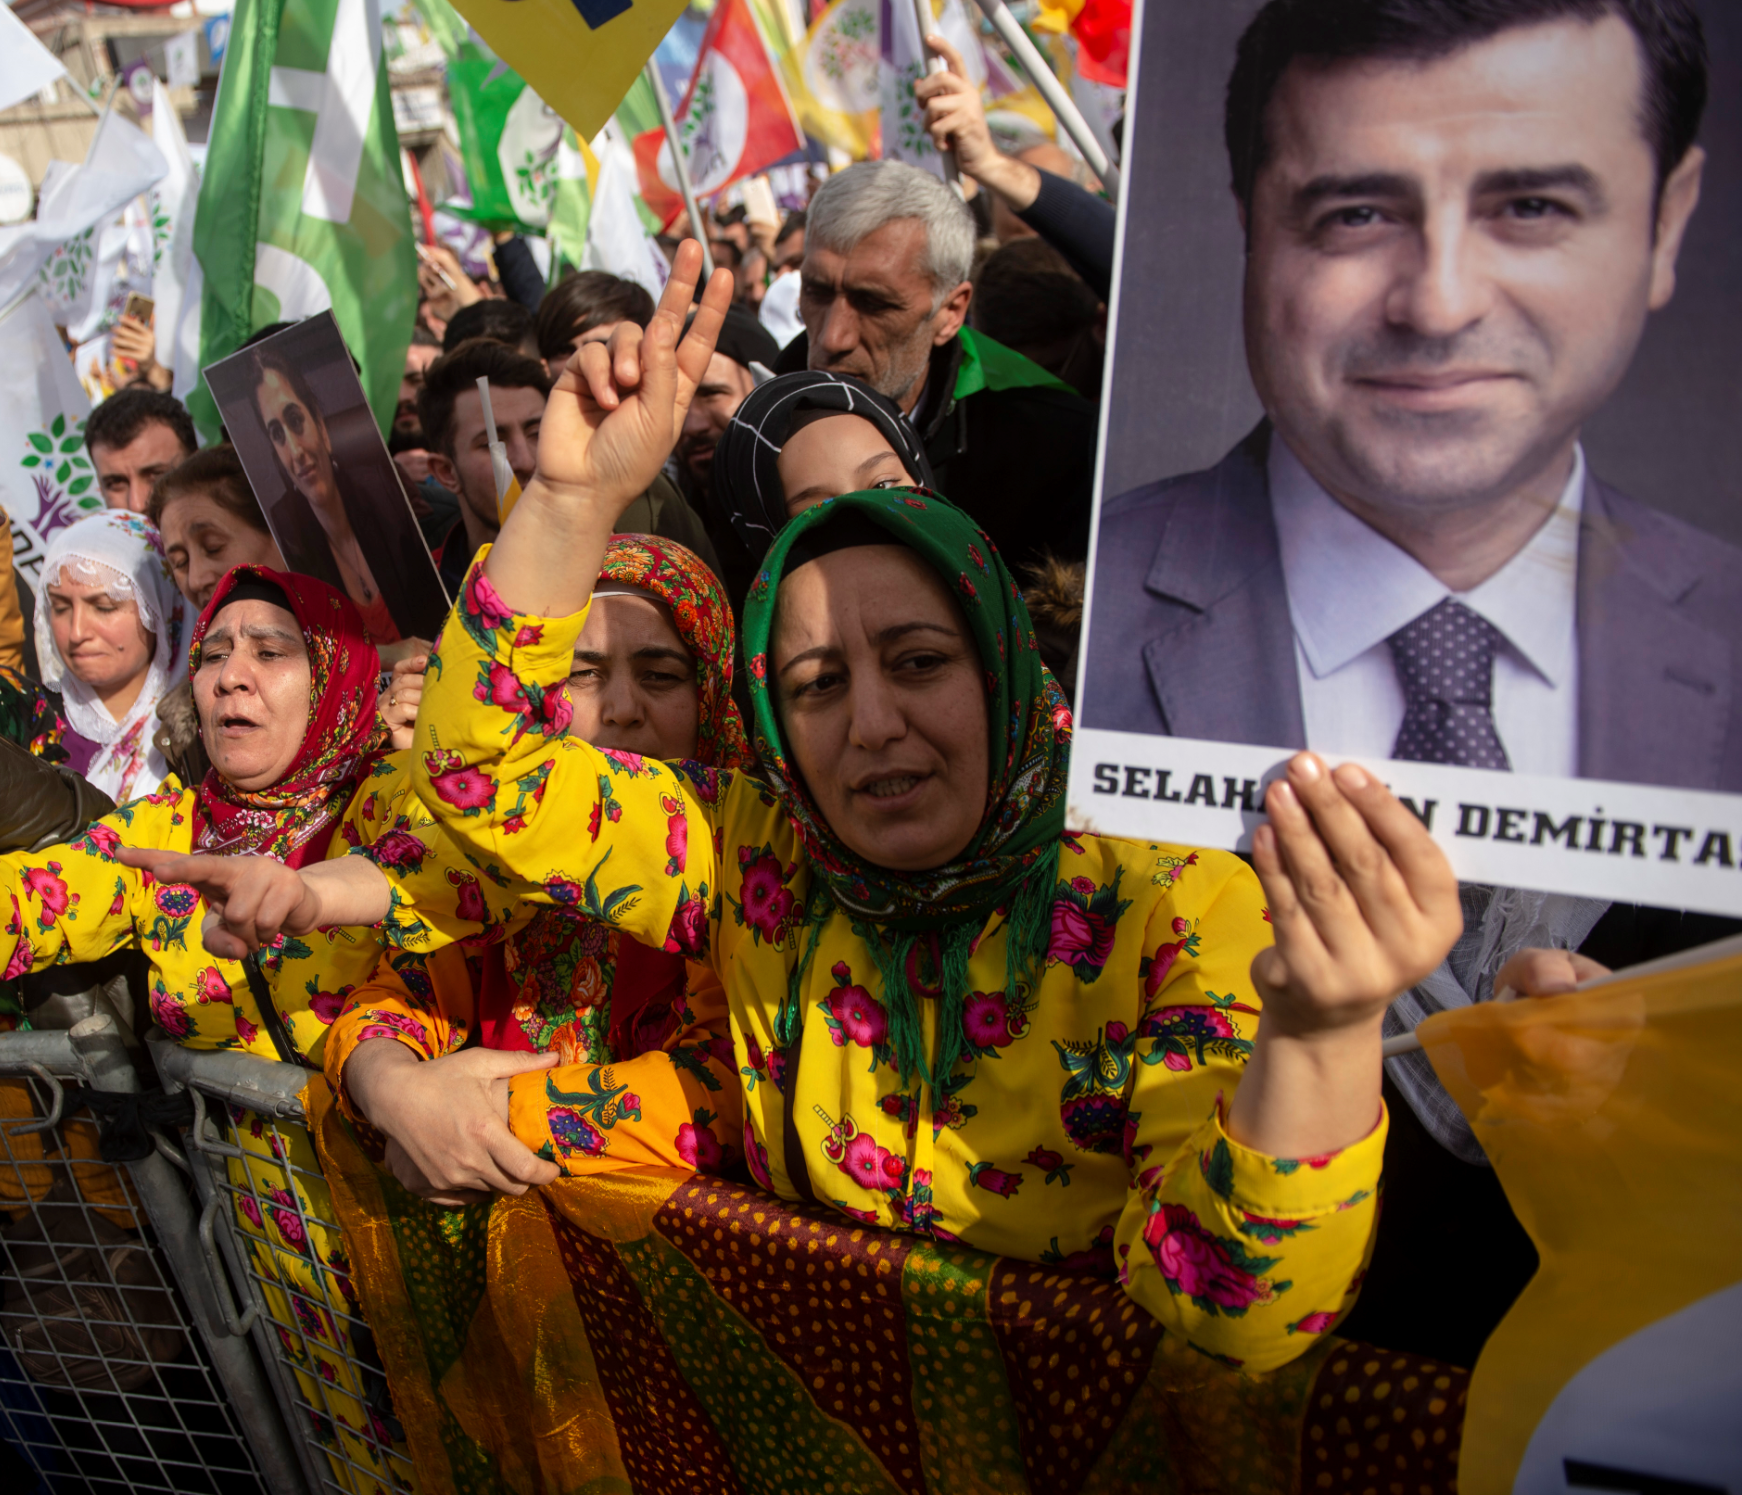  أنصار حزب الشعوب الديمقراطي يحملون صورة دميرتاس أثناء حضورهم تجمعاً لـ السلام والعدالة باسطنبول في 3 فبراير 2019